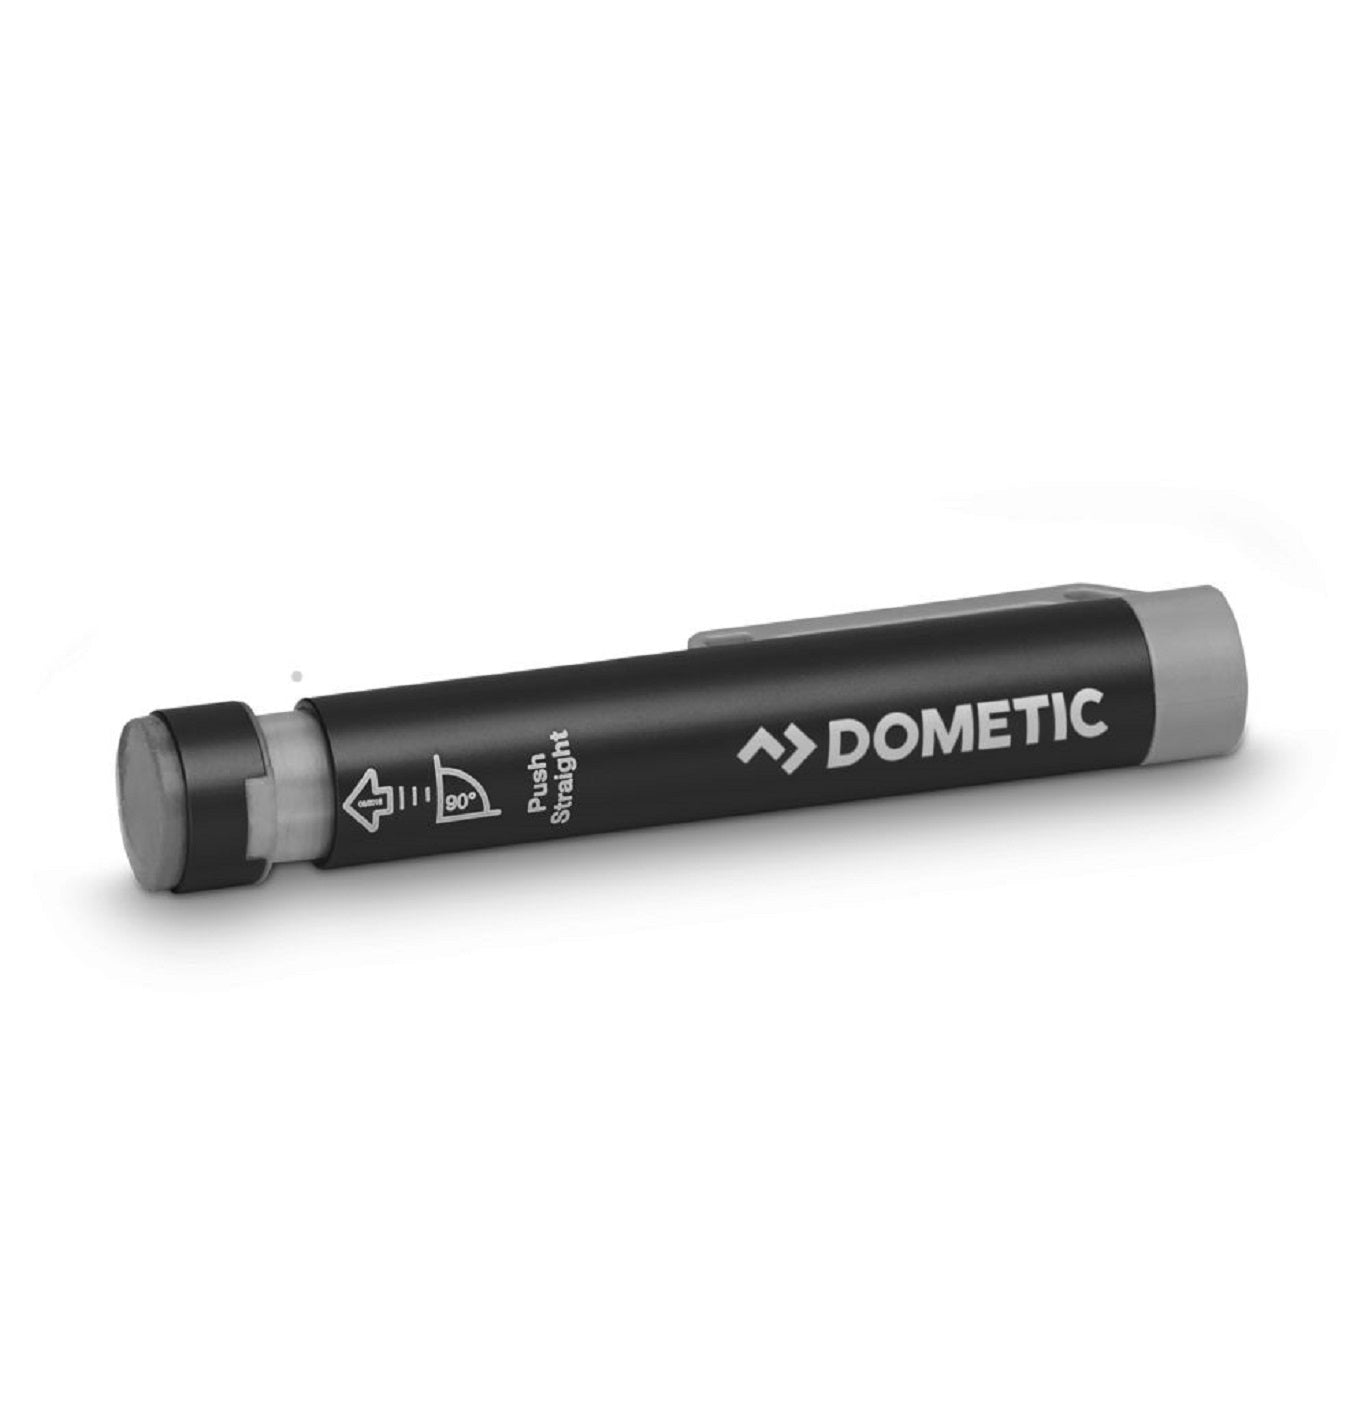 Dometic GC 100 Gas Level Checker Pen Image